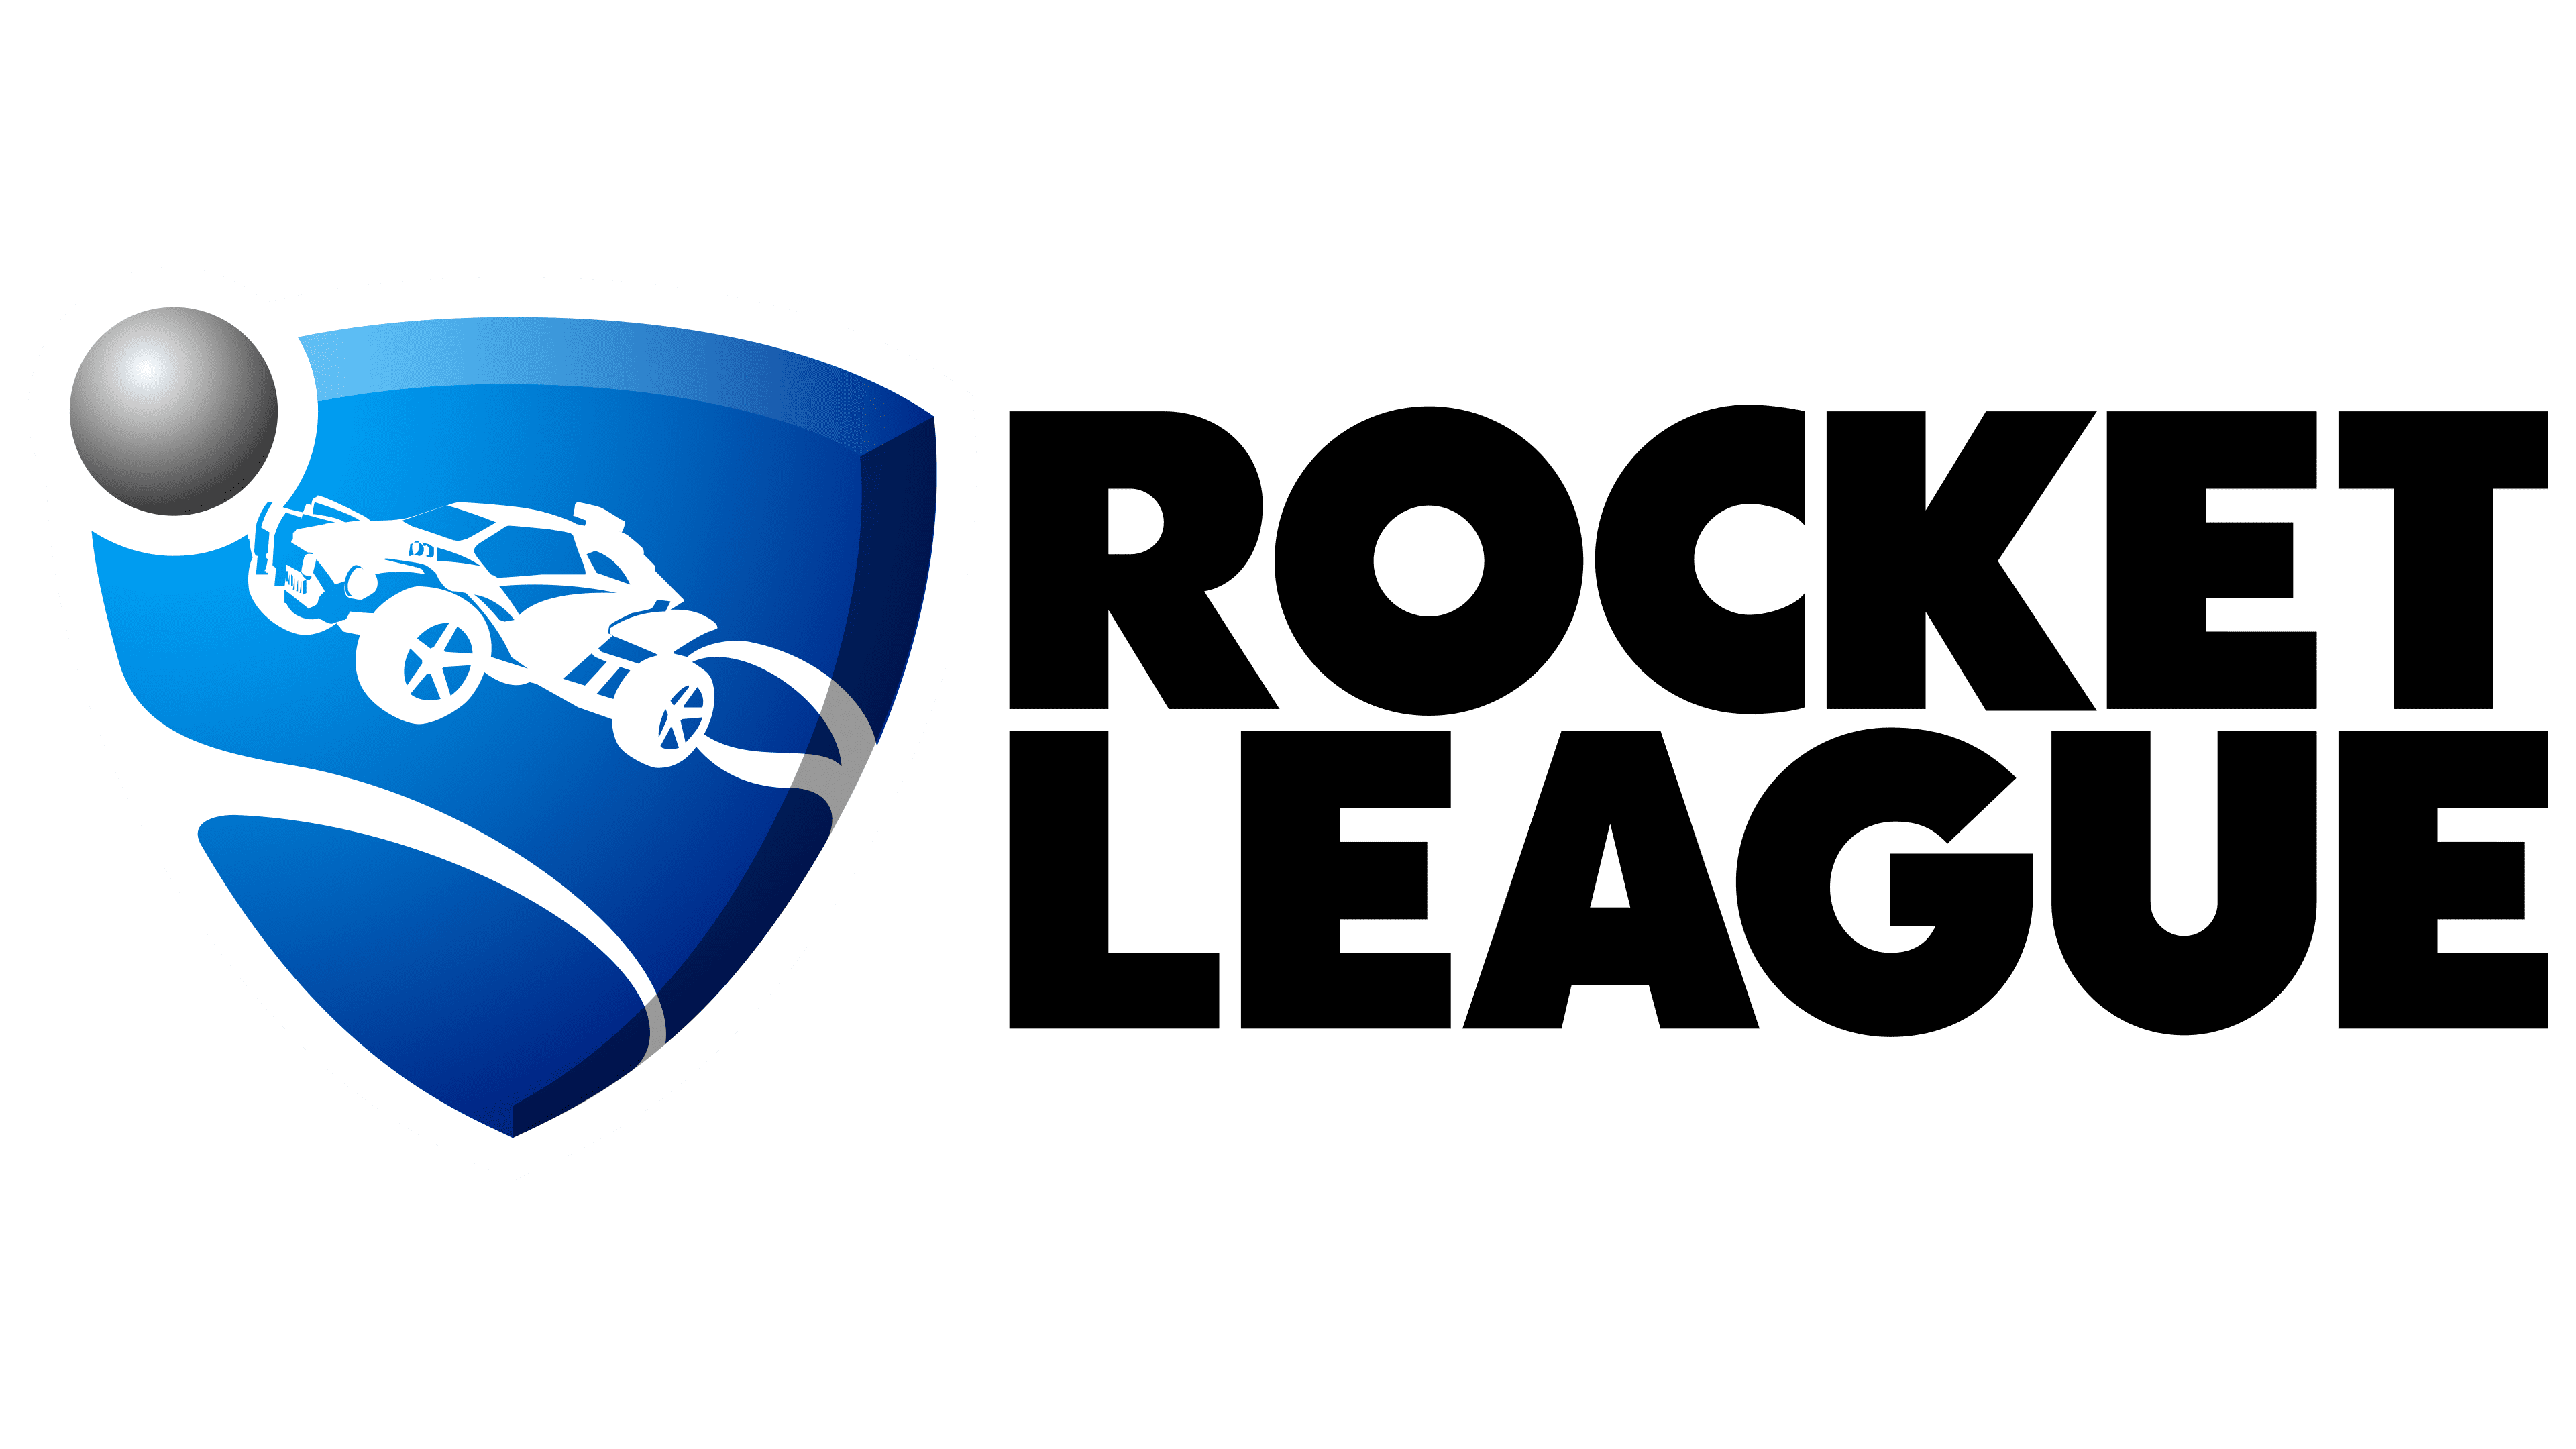 Rocket league rocket league octane transparent 2d